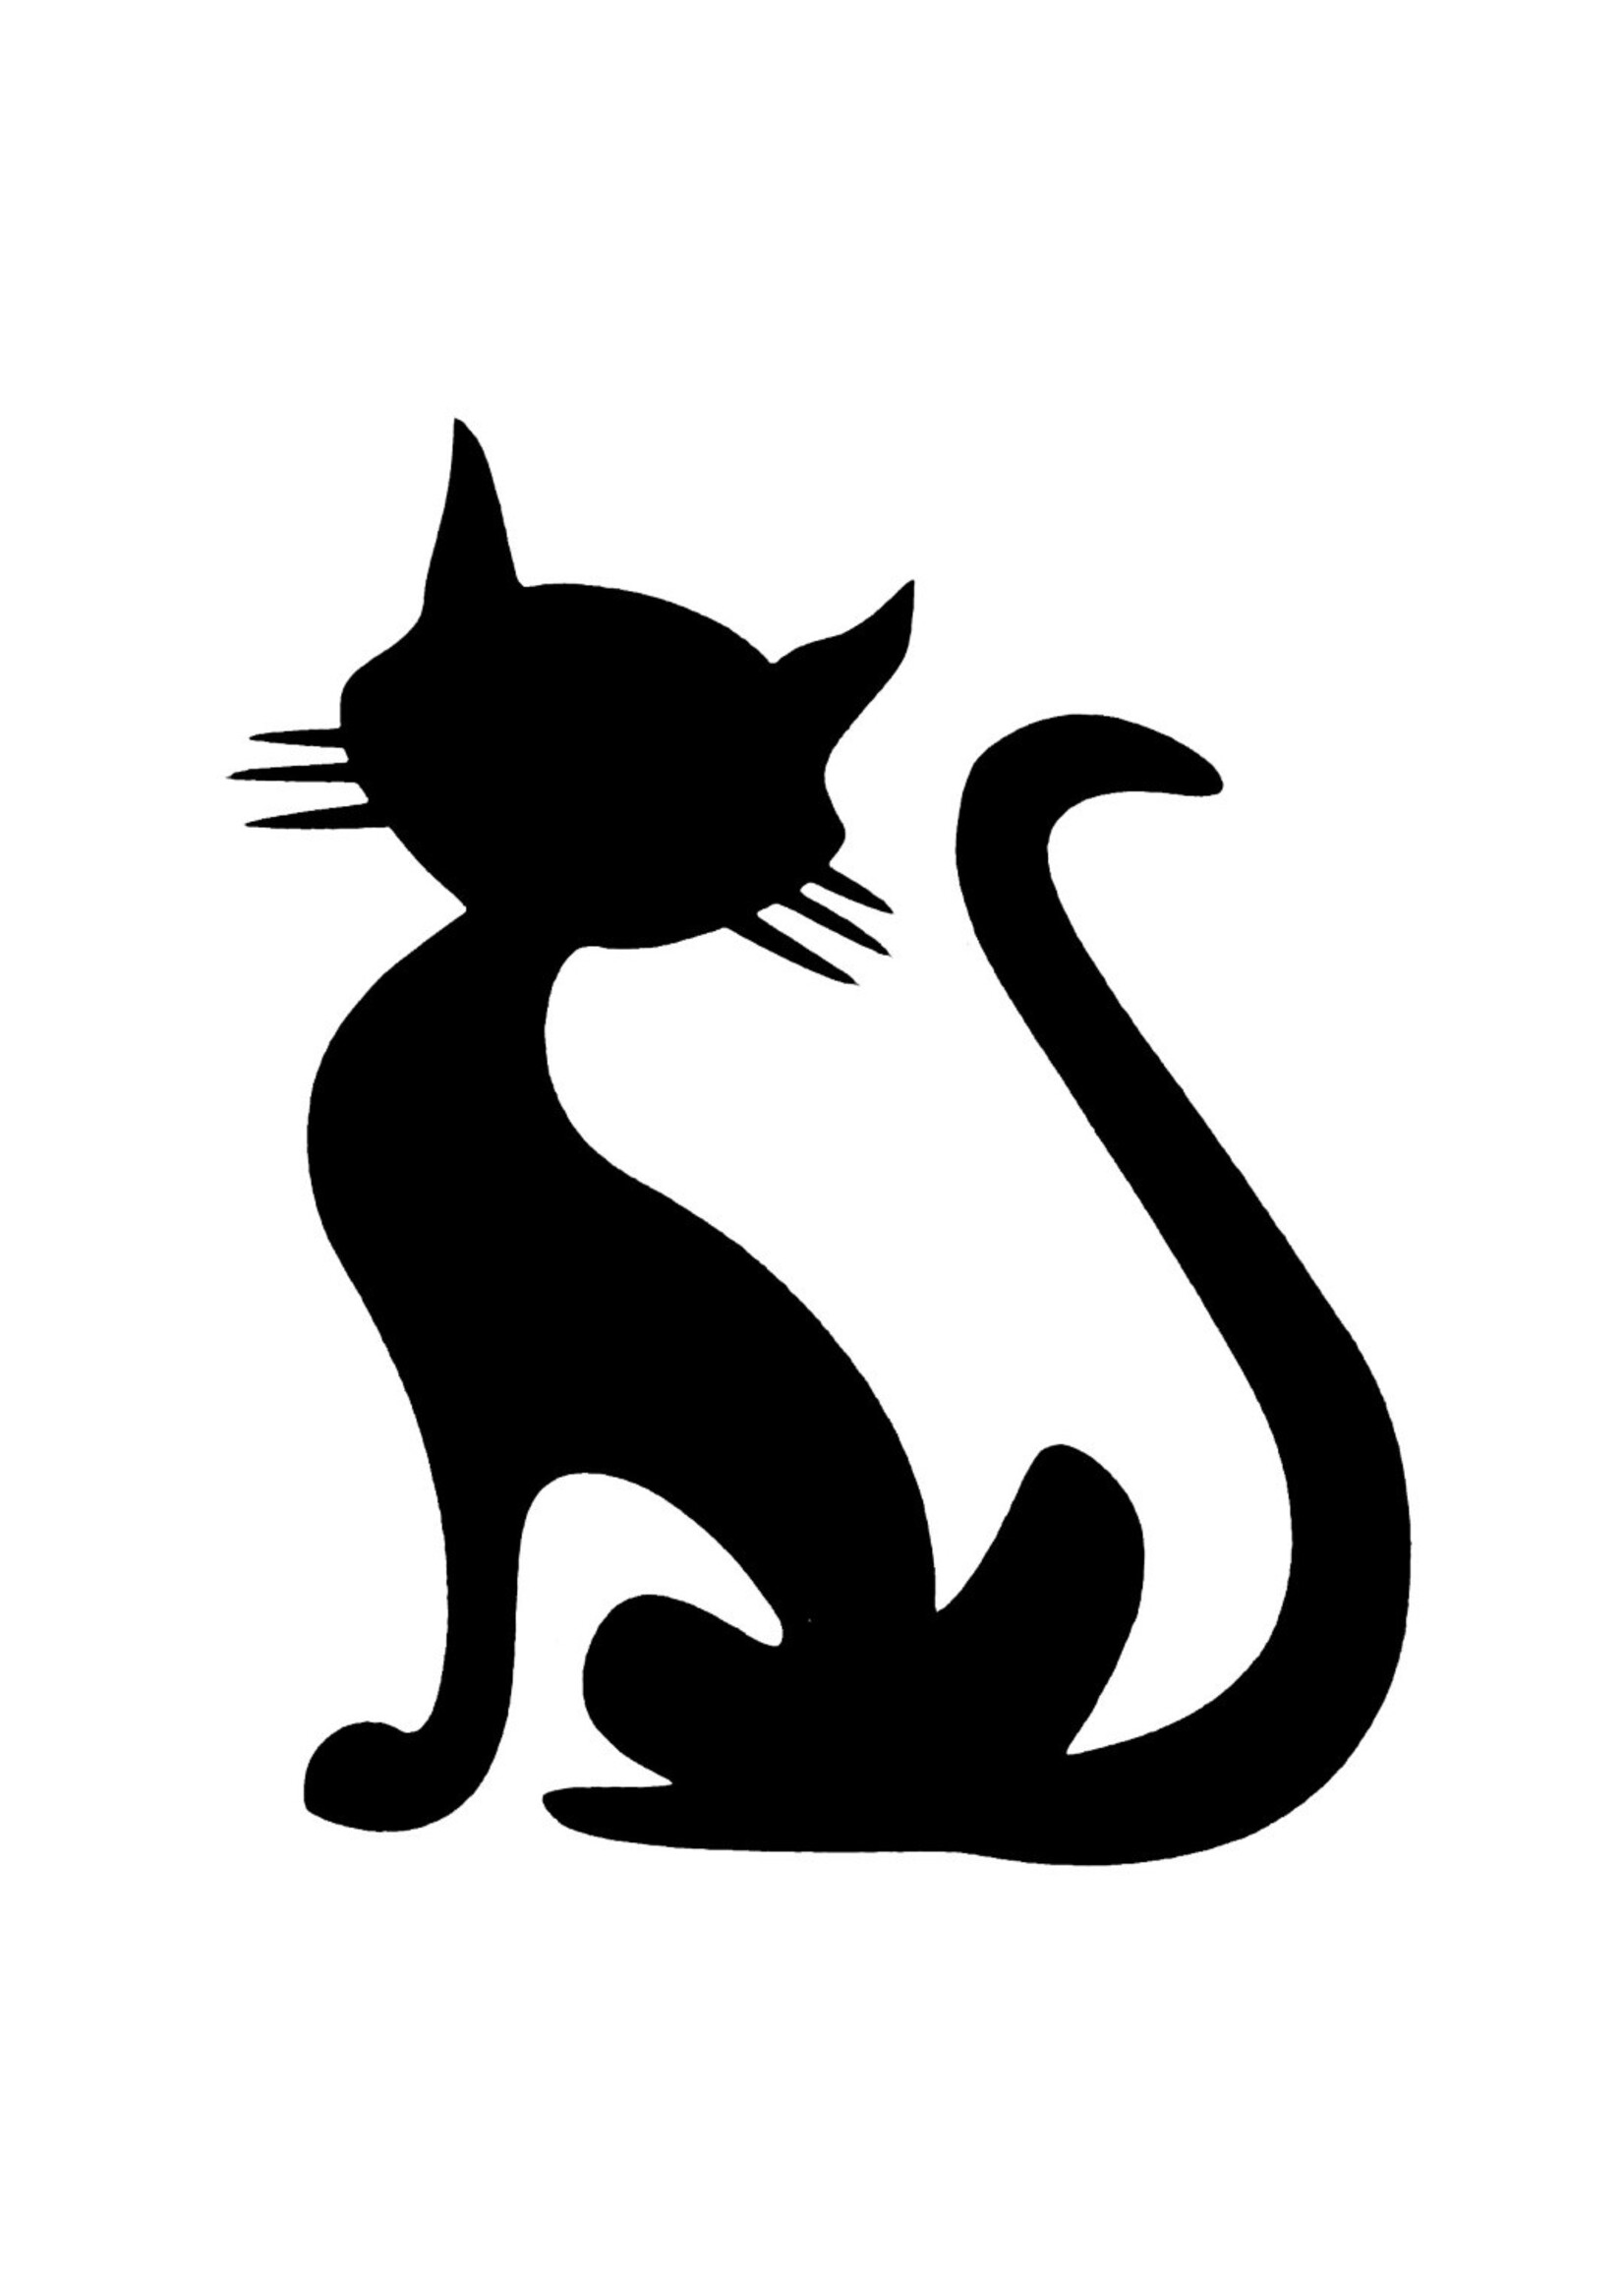 MRQ - Stencils Cat Glittertattoo stencil per set à 5 stuks